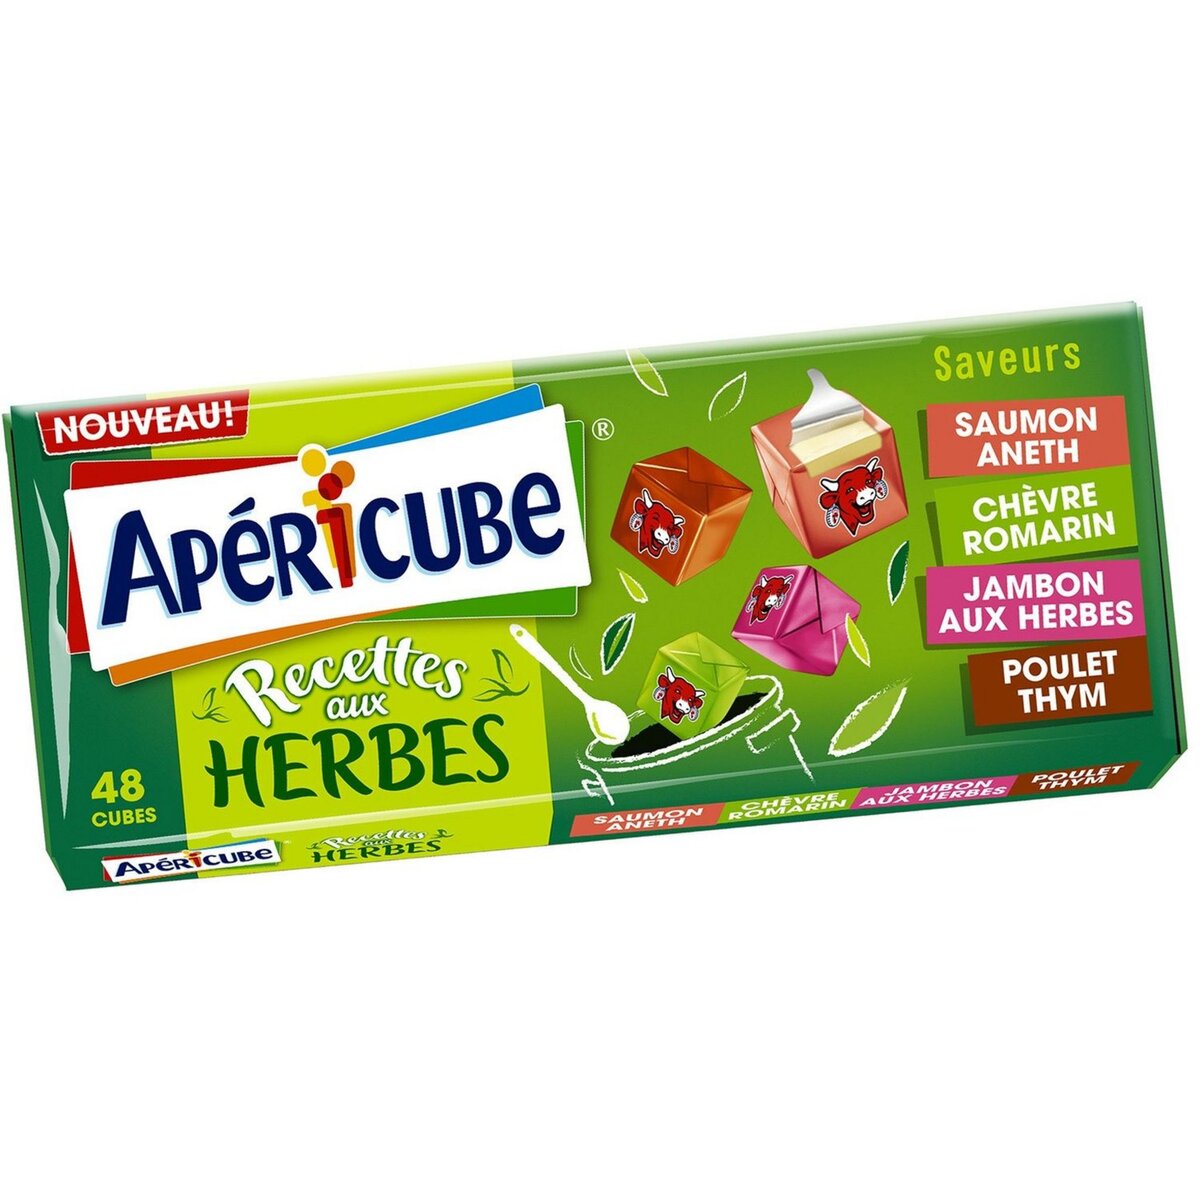 APERICUBE Cubes de fromage apéritif Recettes aux herbes 48 cubes 250g